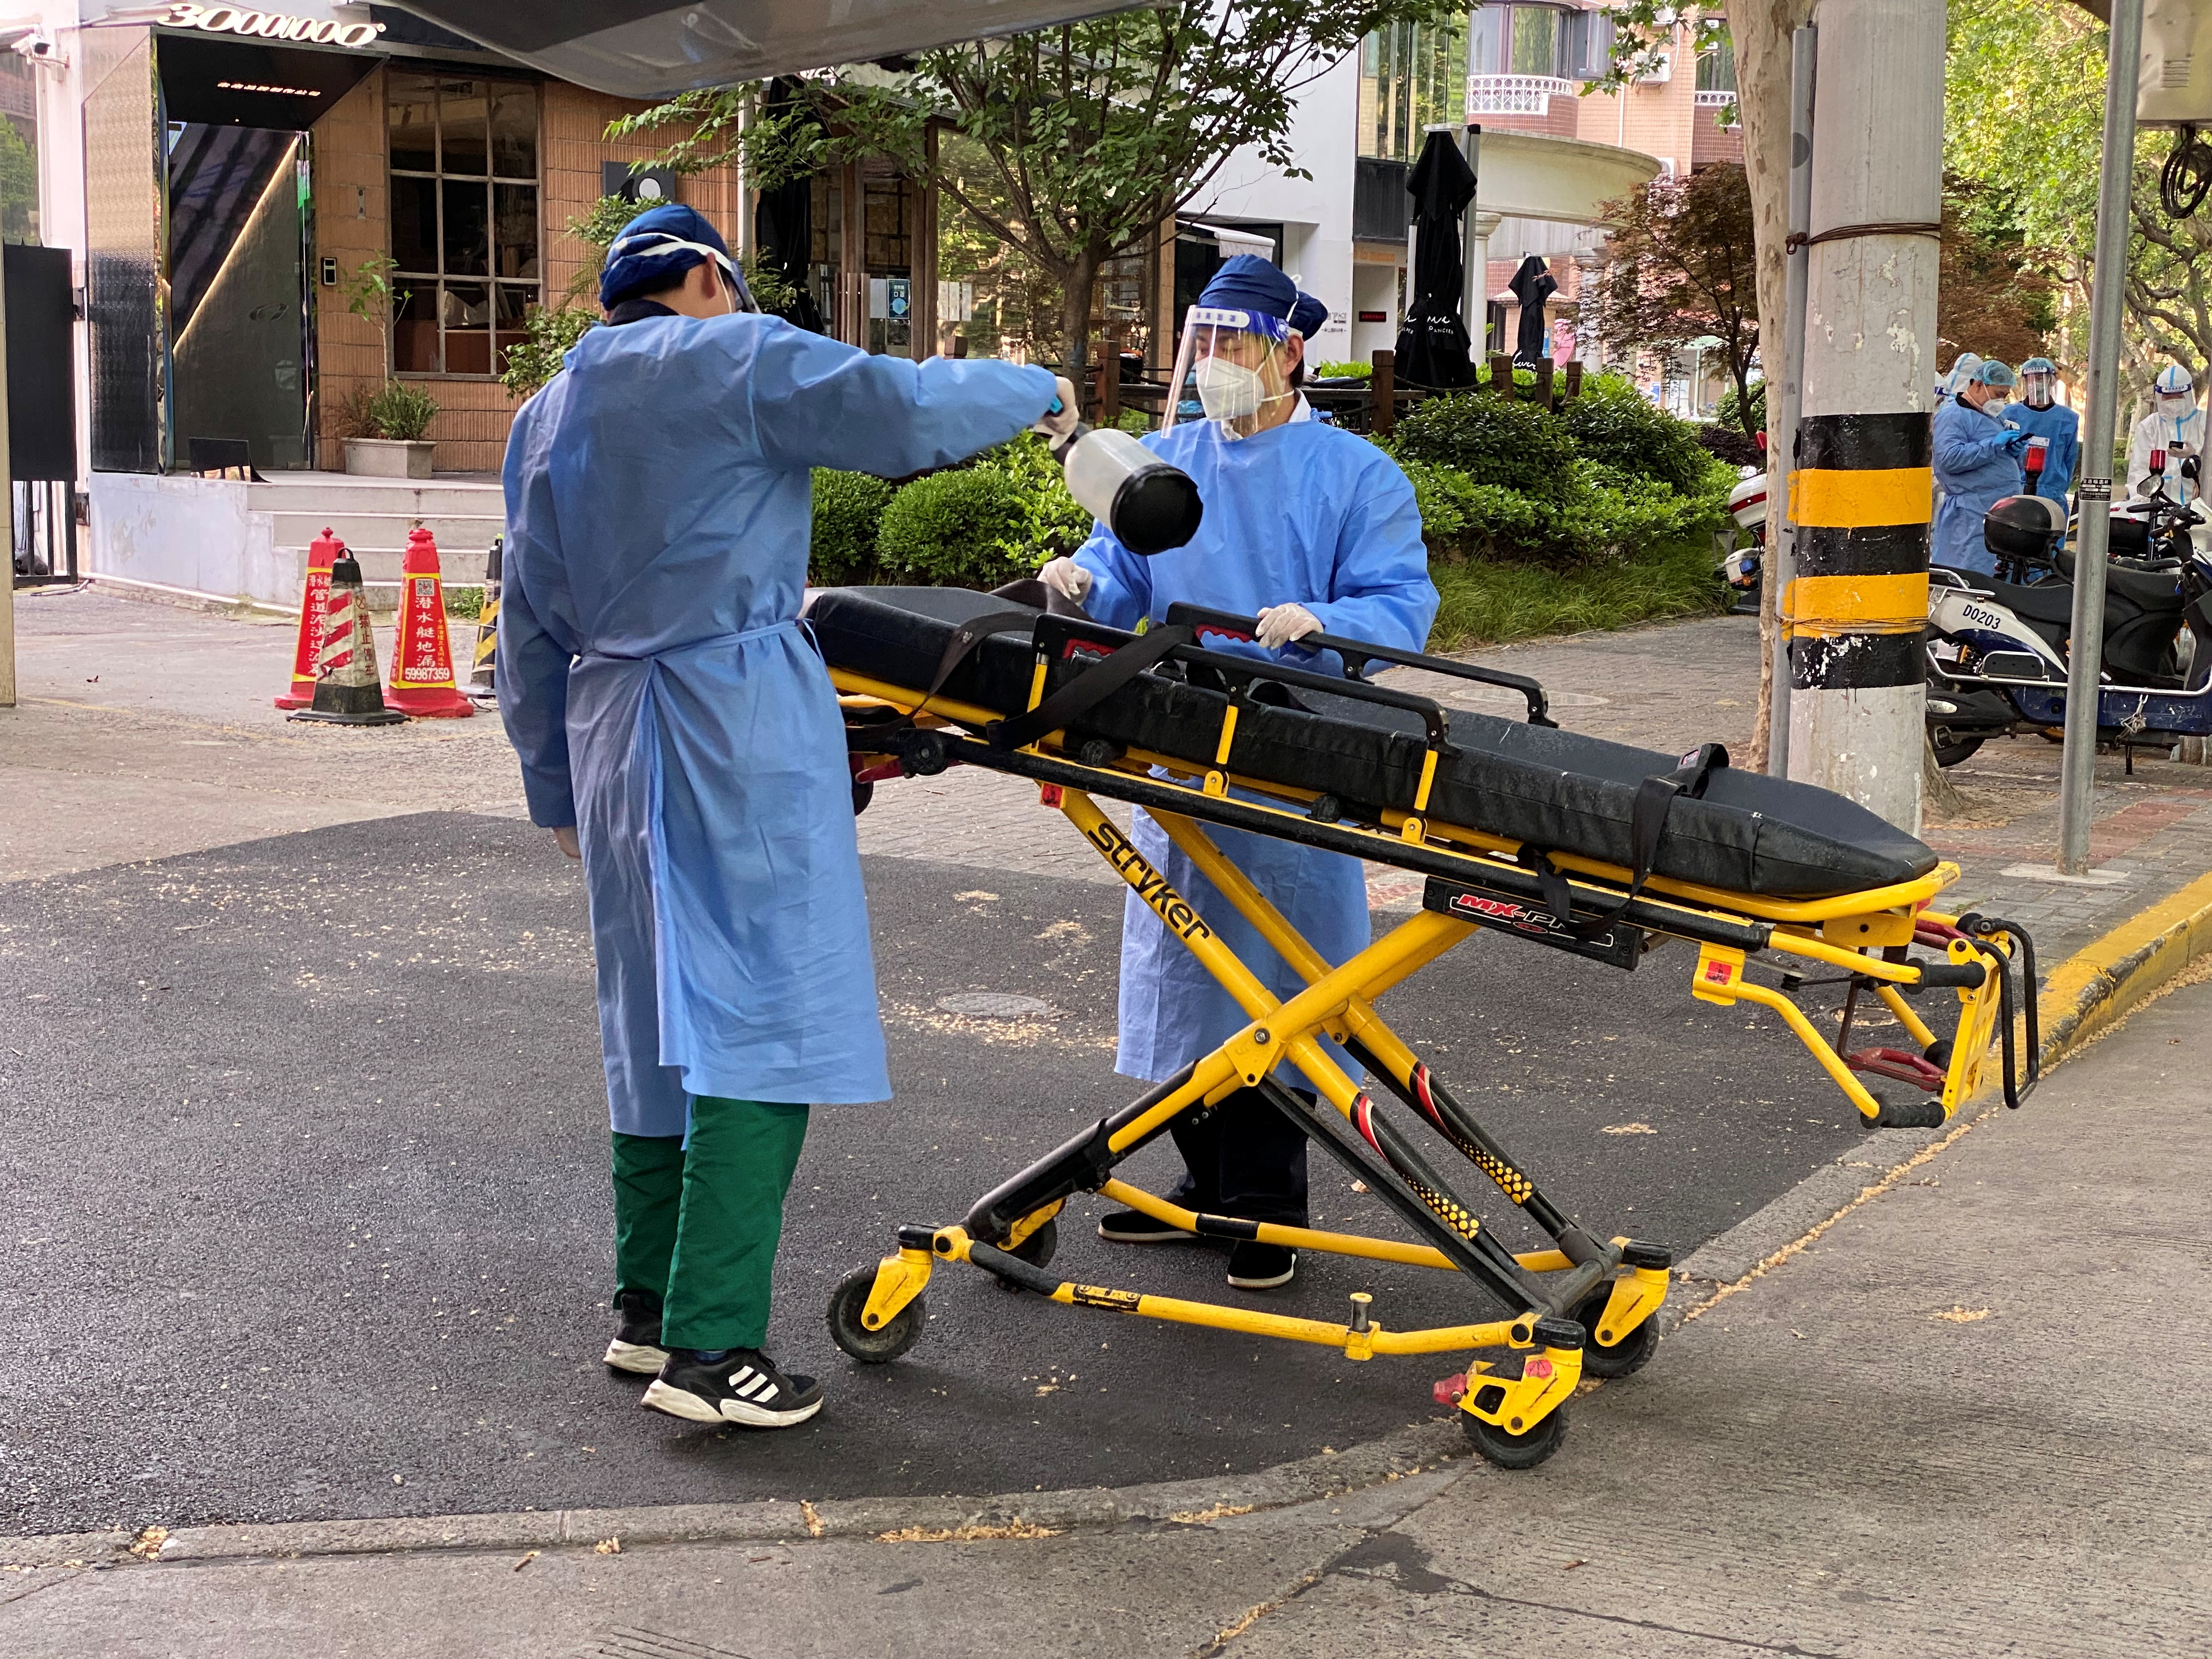 Un trabajador con traje de protección rocía desinfectante sobre una camilla, tras el brote de la enfermedad por coronavirus (COVID-19) en Shanghái, China el 21 de abril de 2022. REUTERS/Andrew Galbraith